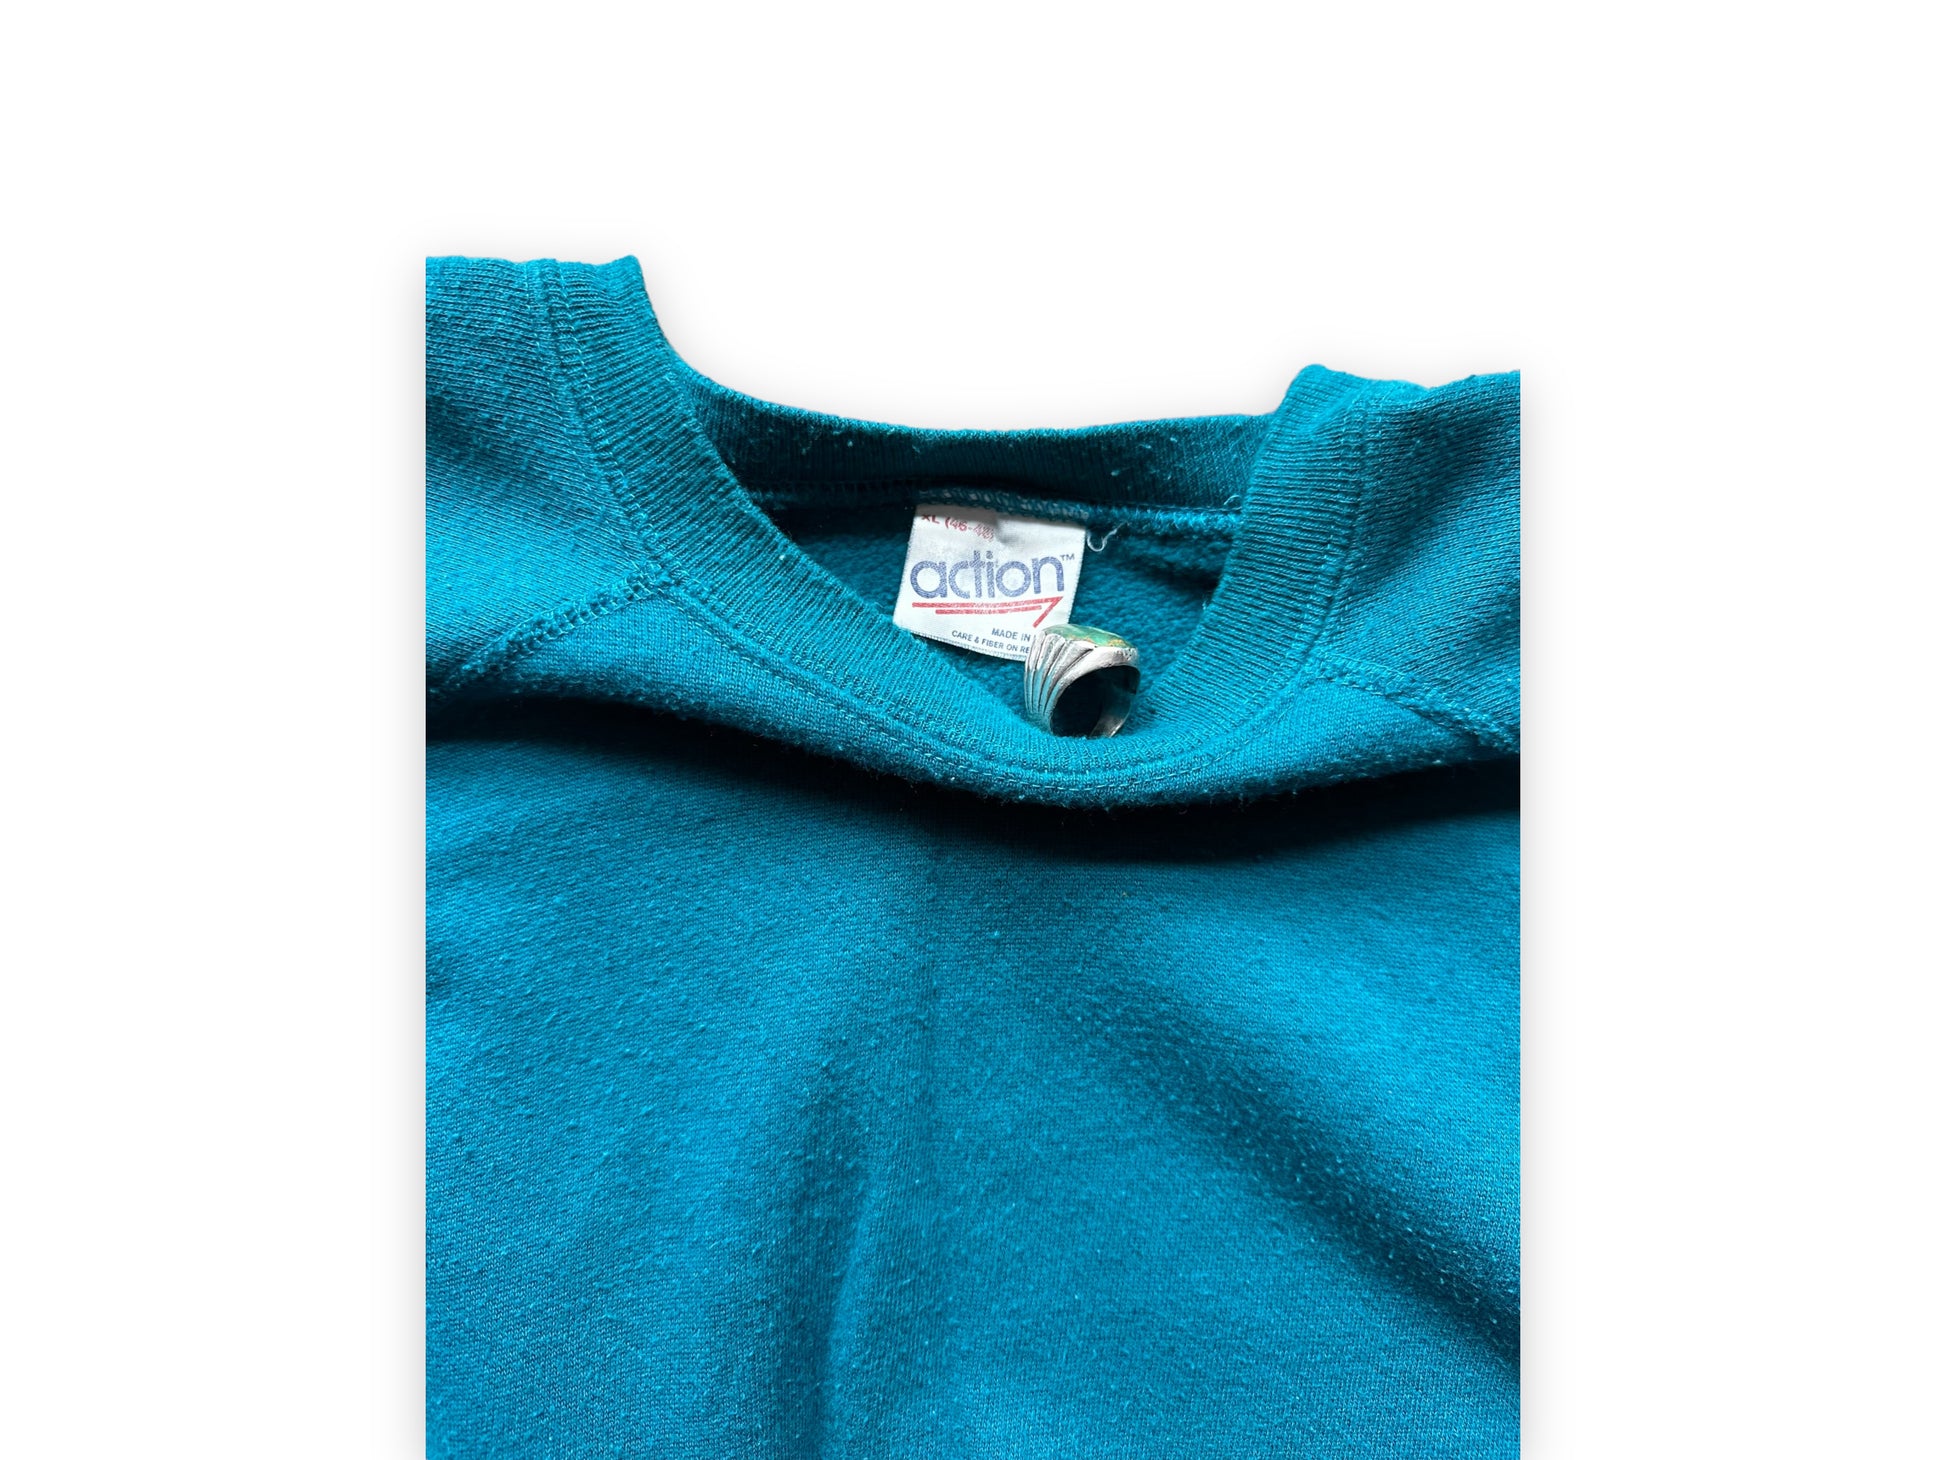 Tag View of Vintage Teal Raglan Blank Crewneck Sweatshirt | Vintage Crewneck Sweatshirt Seattle | Barn Owl Vintage Clothing